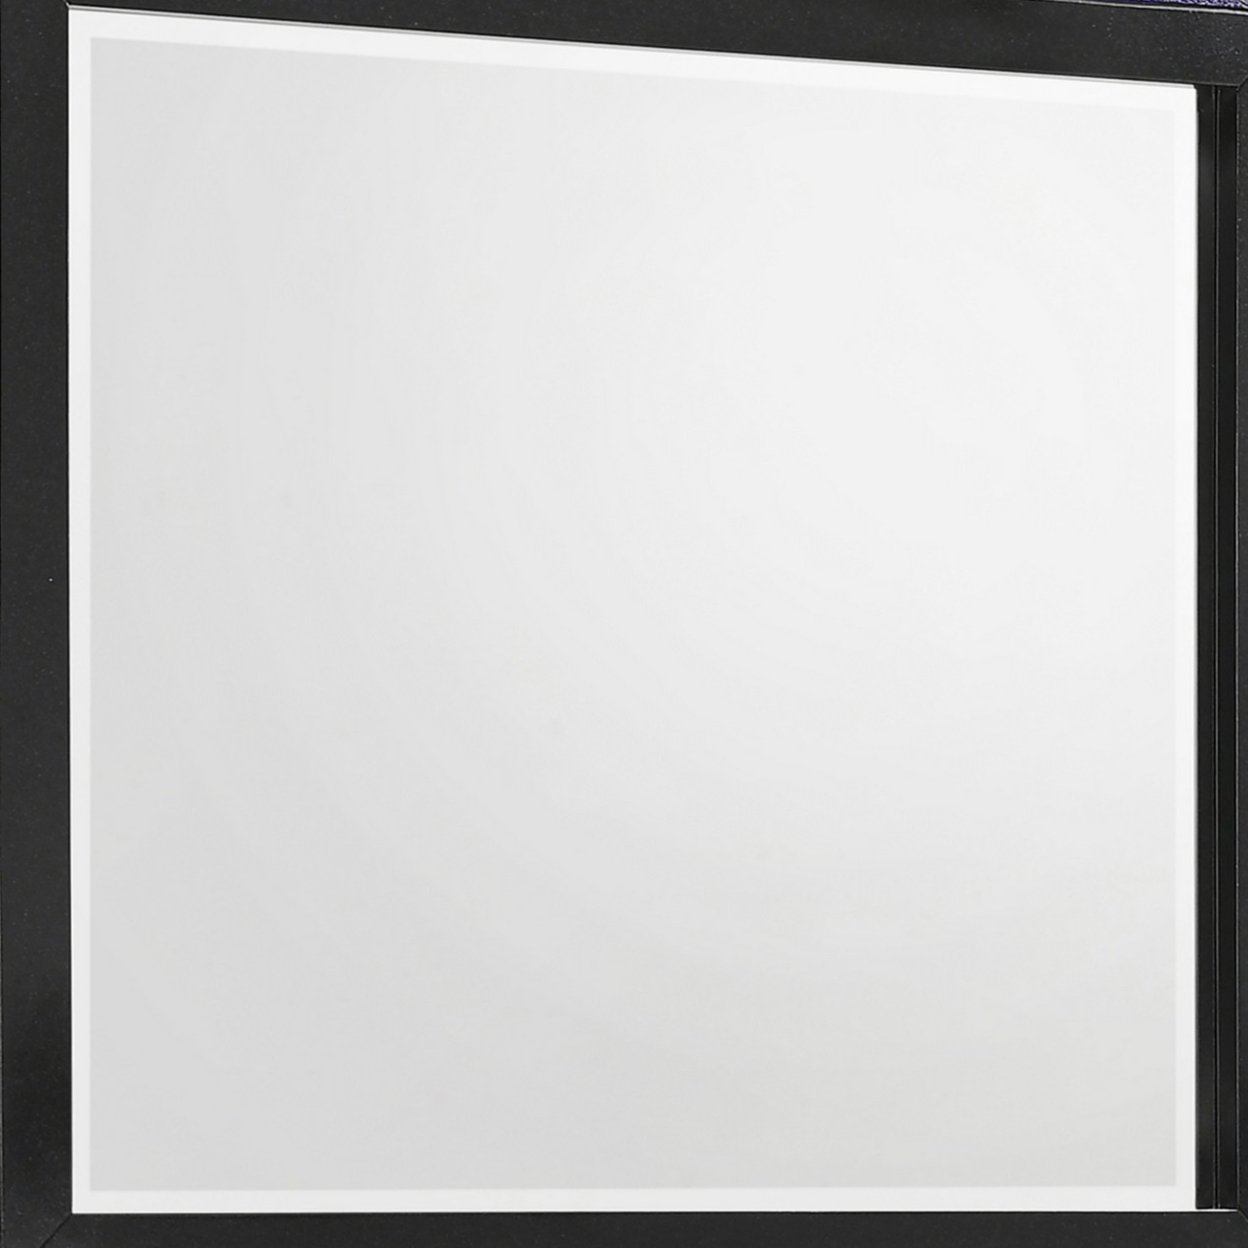 Vini 44 Inch Modern Mirror, Rectangular Wood Frame, Built In LED, Black